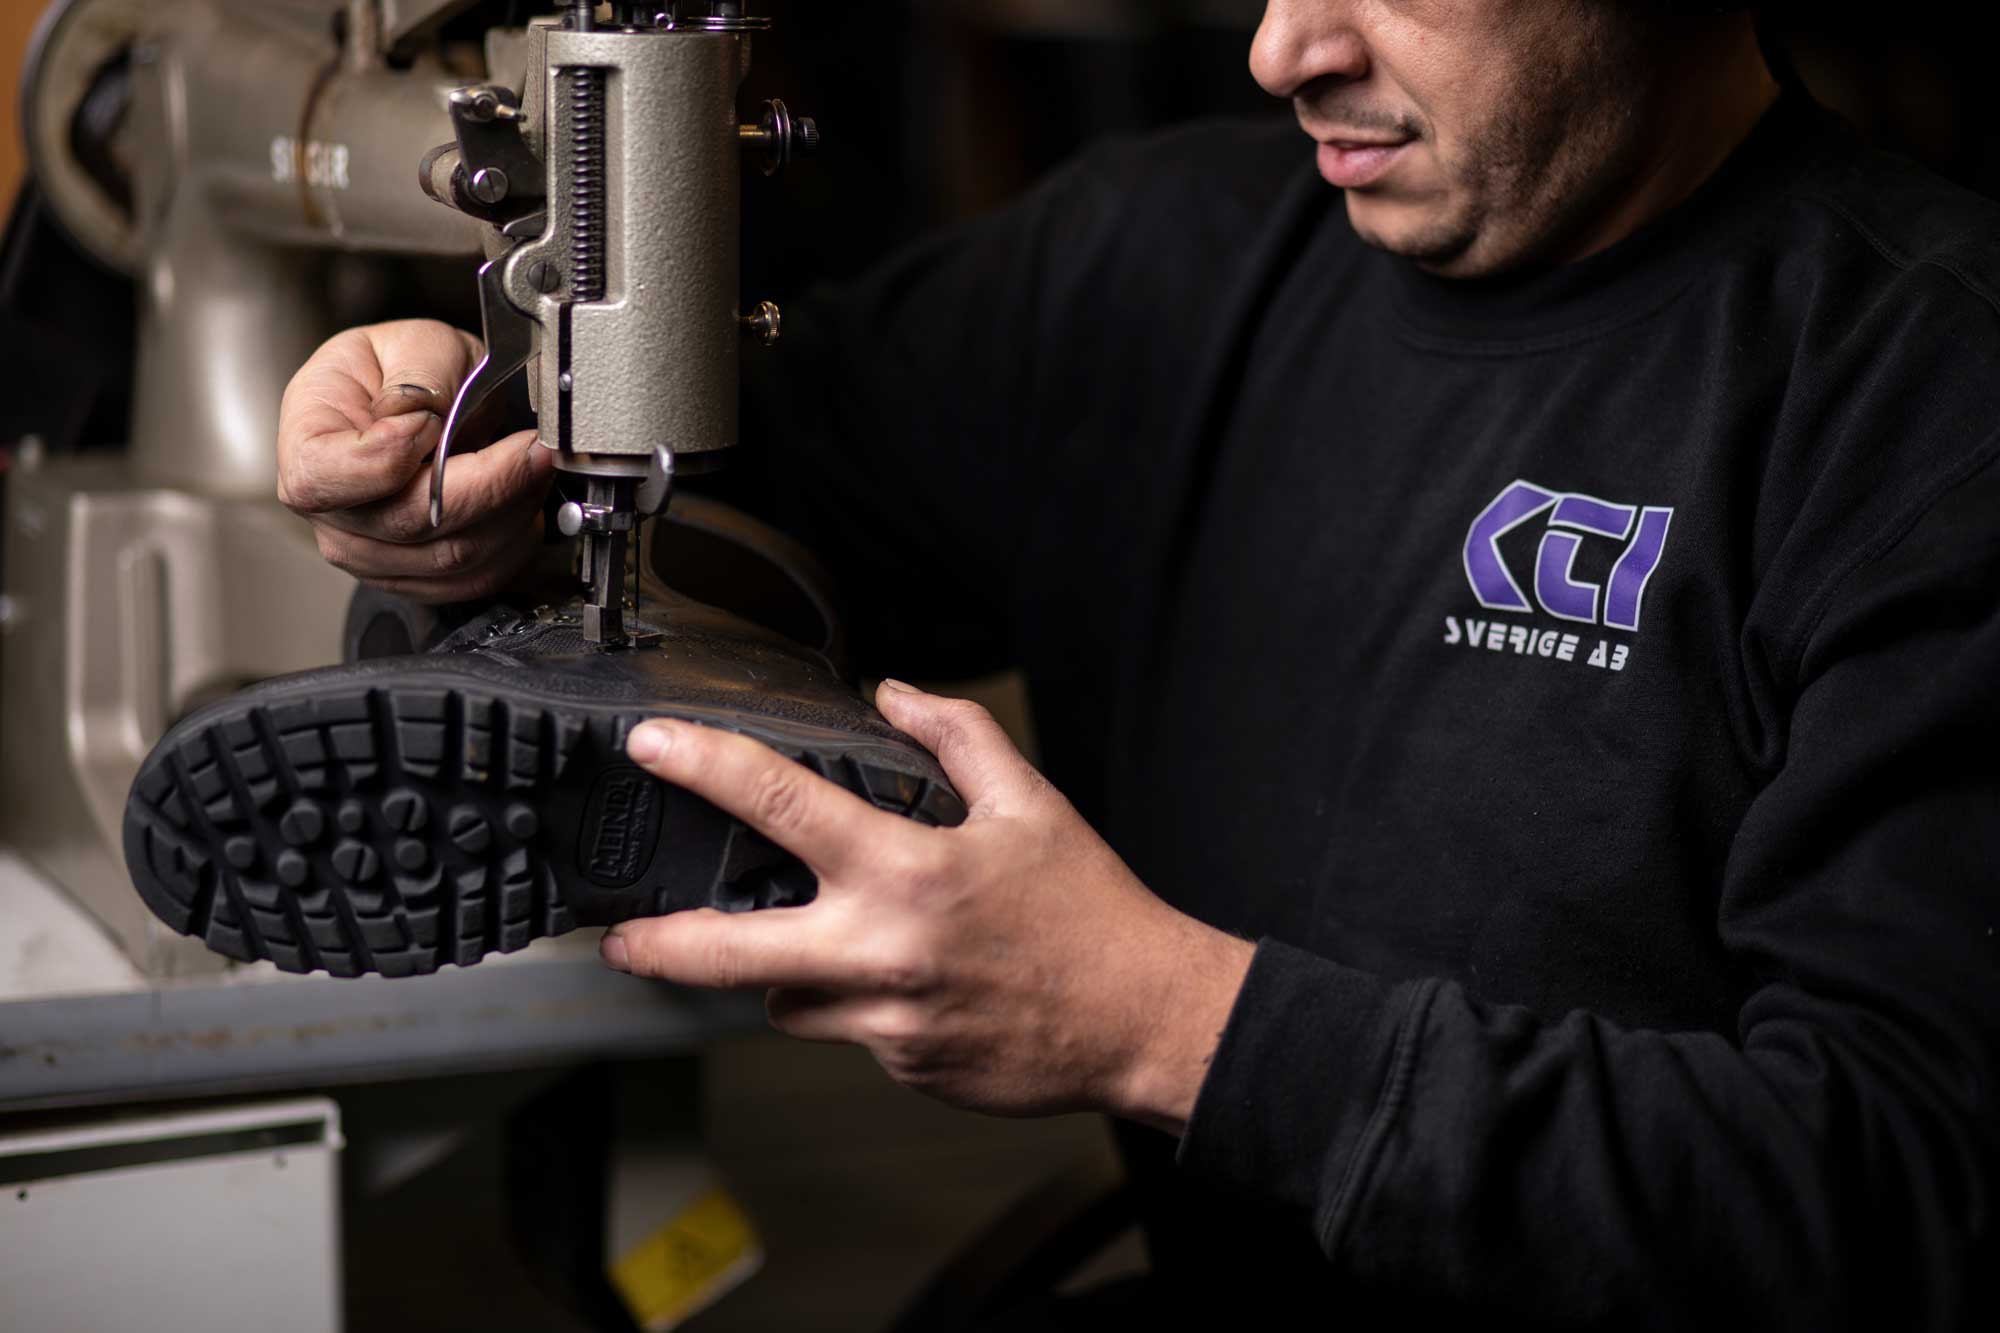 En medarbetare hos KTI reparerar en sko med hjälp av en maskin.